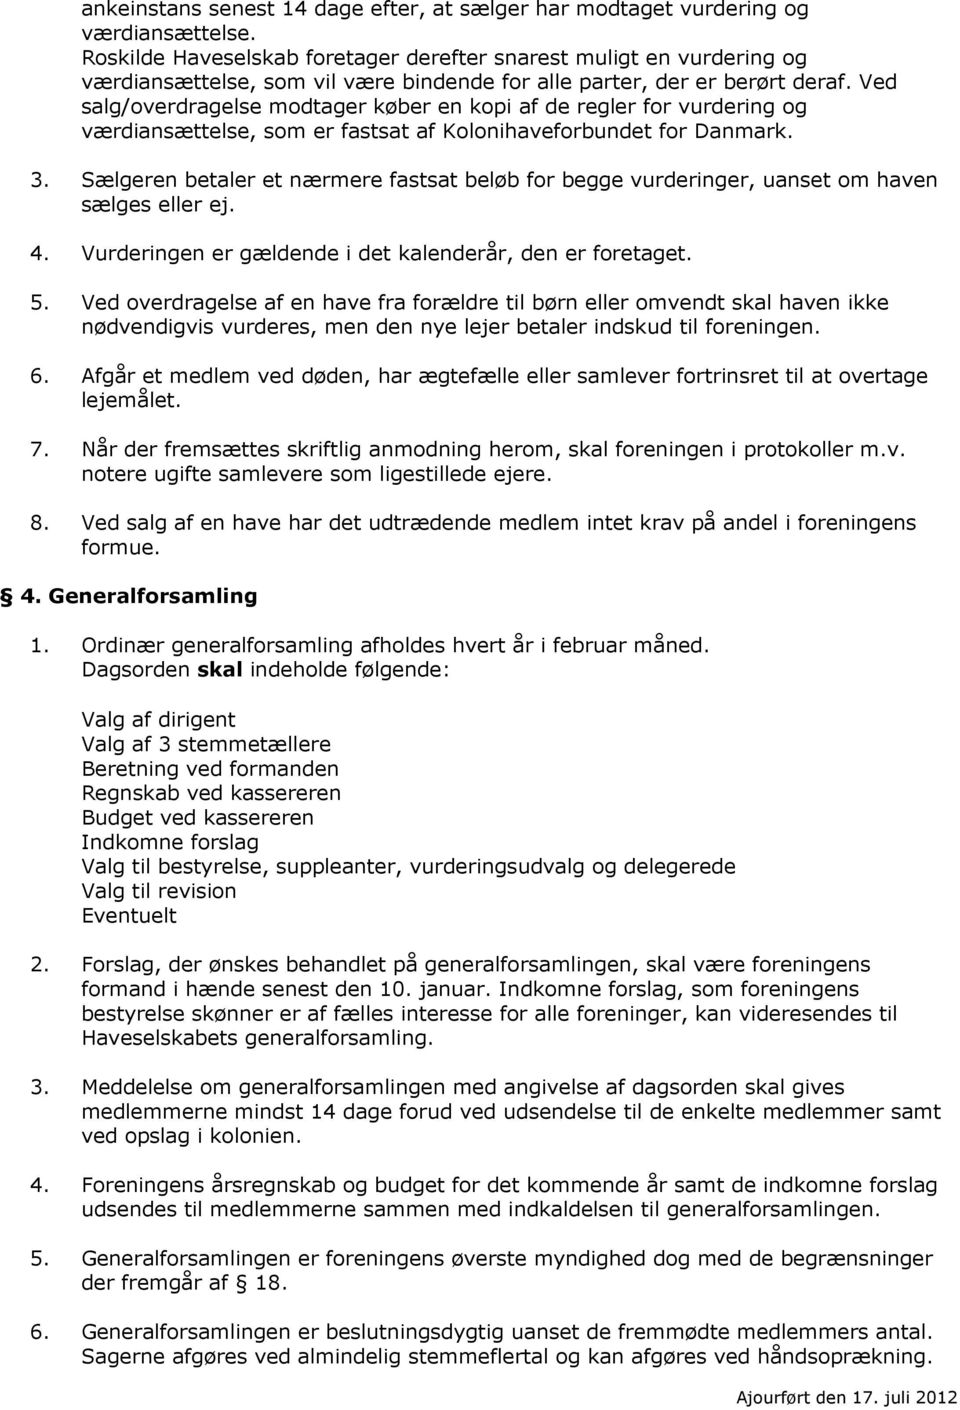 Ved salg/overdragelse modtager køber en kopi af de regler for vurdering og værdiansættelse, som er fastsat af Kolonihaveforbundet for Danmark. 3.